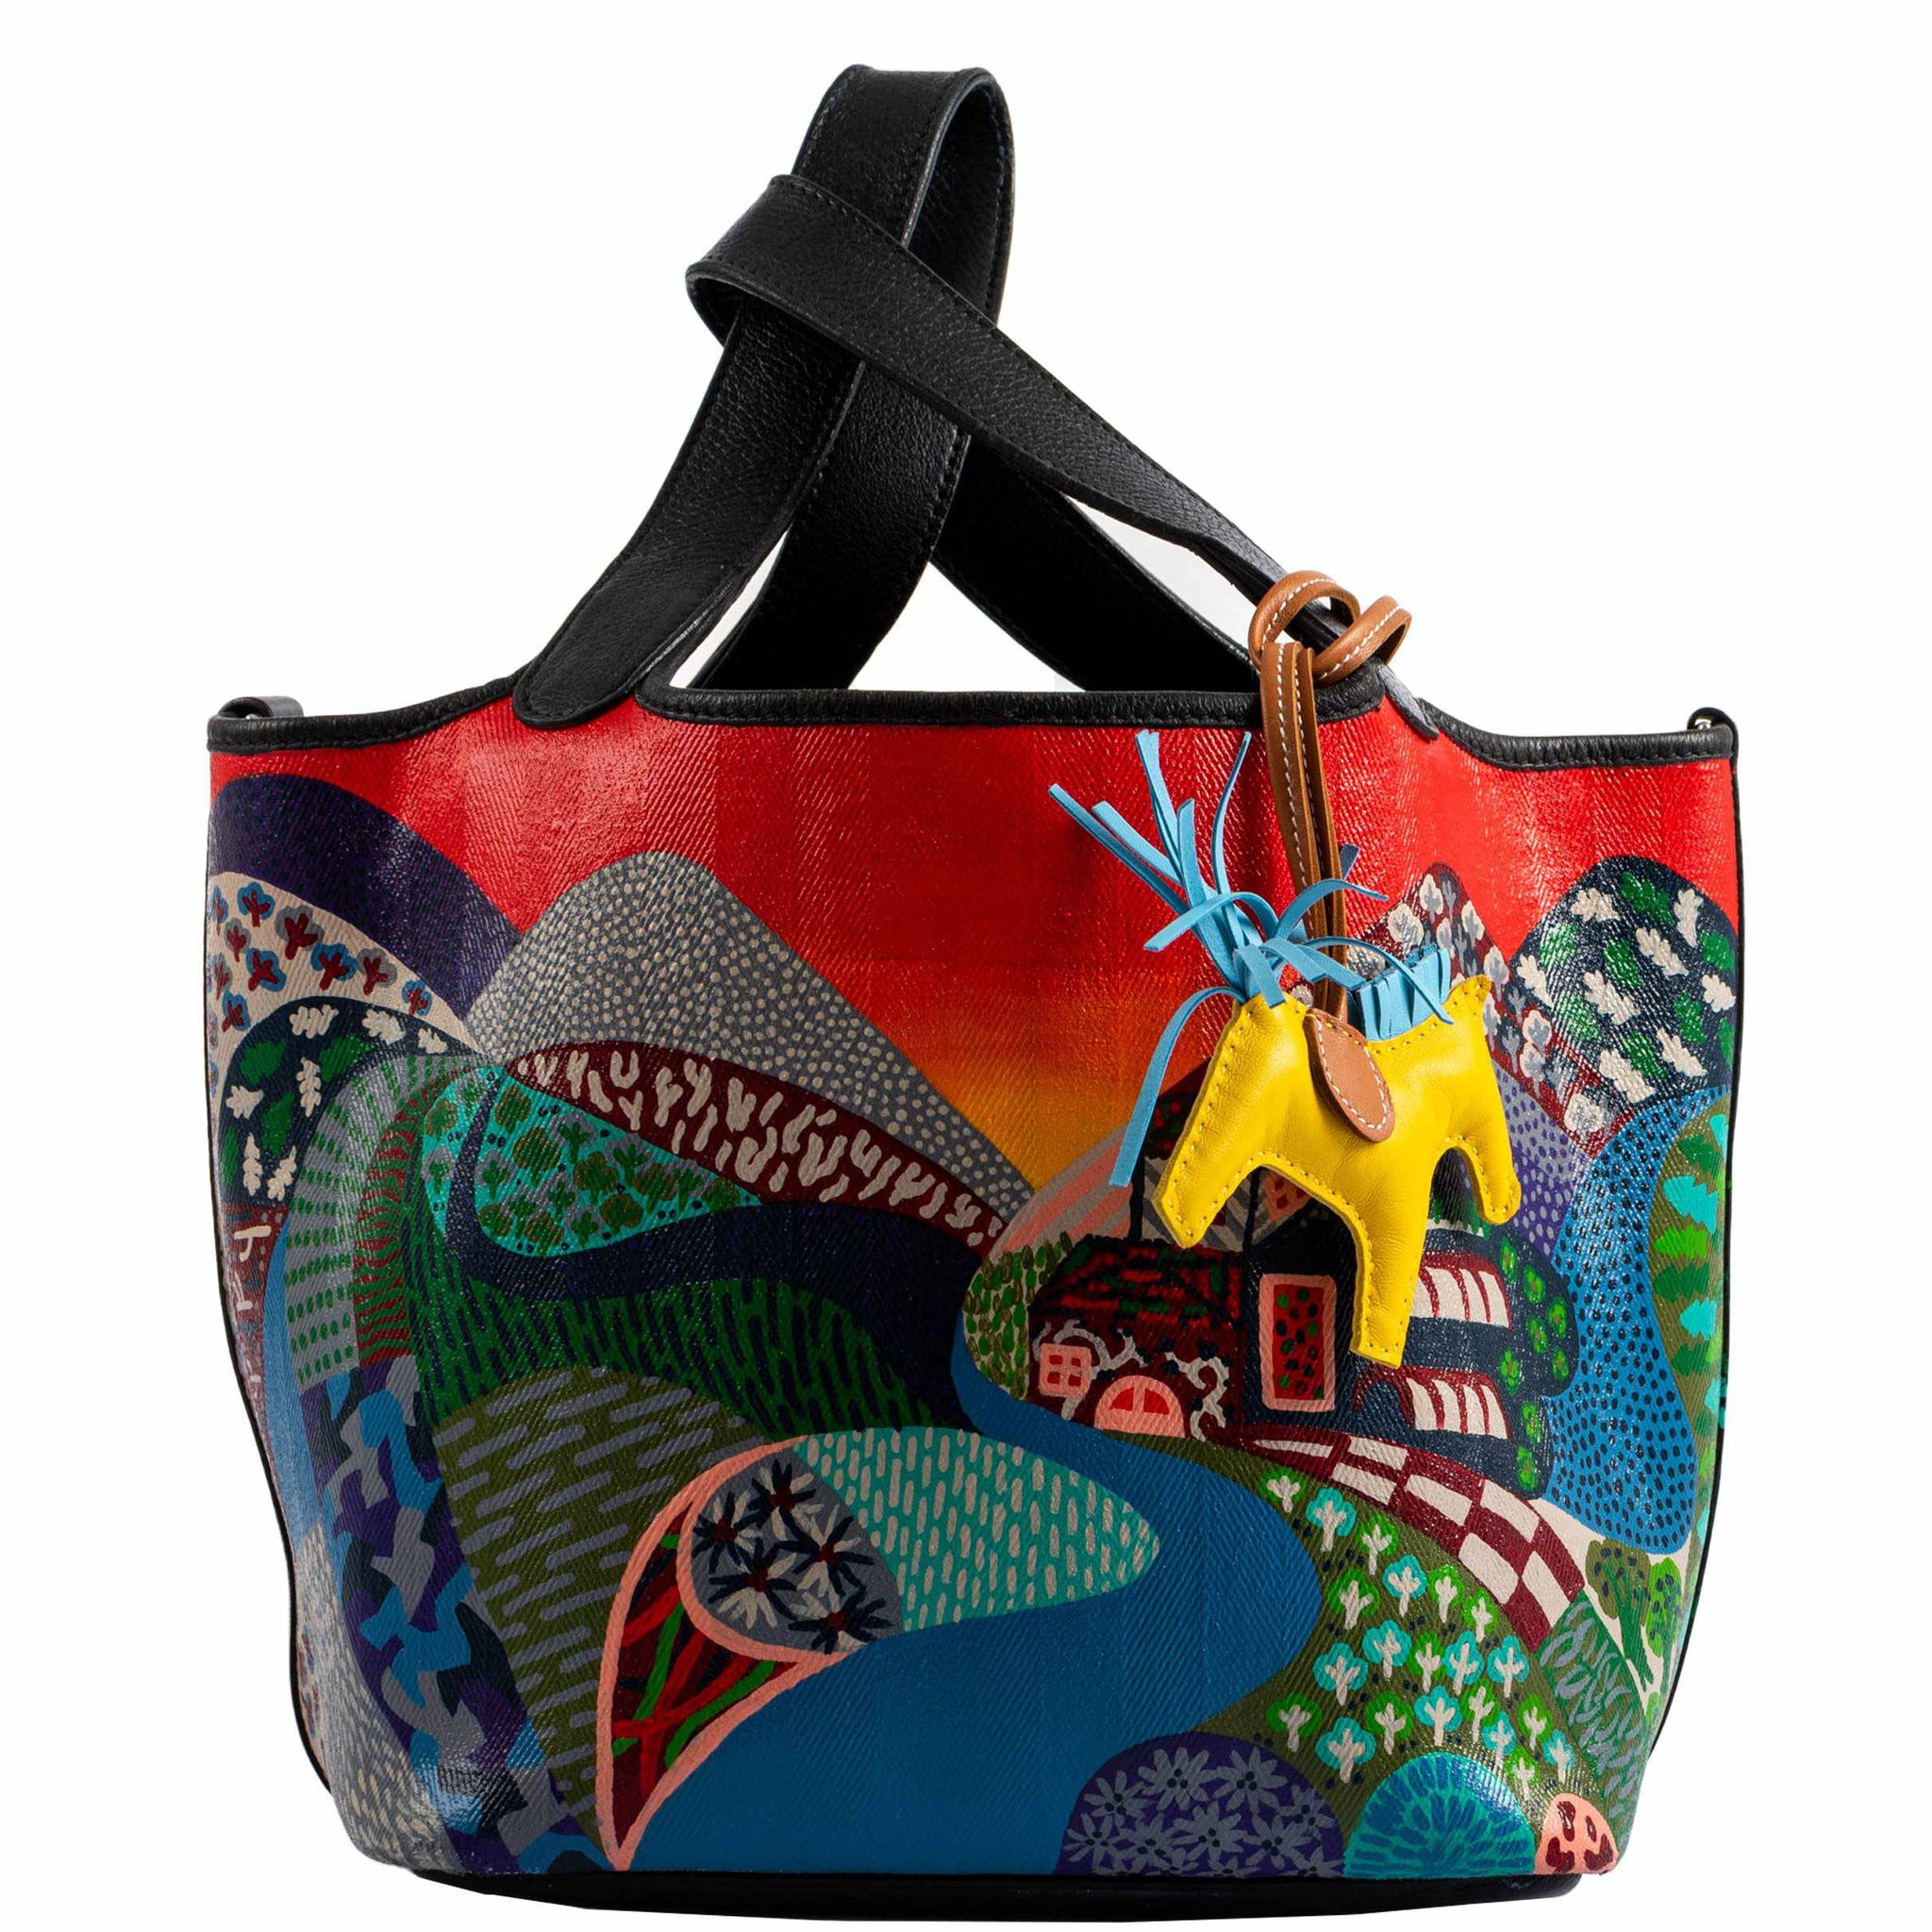 Shop Picotin Handbags, Hermes